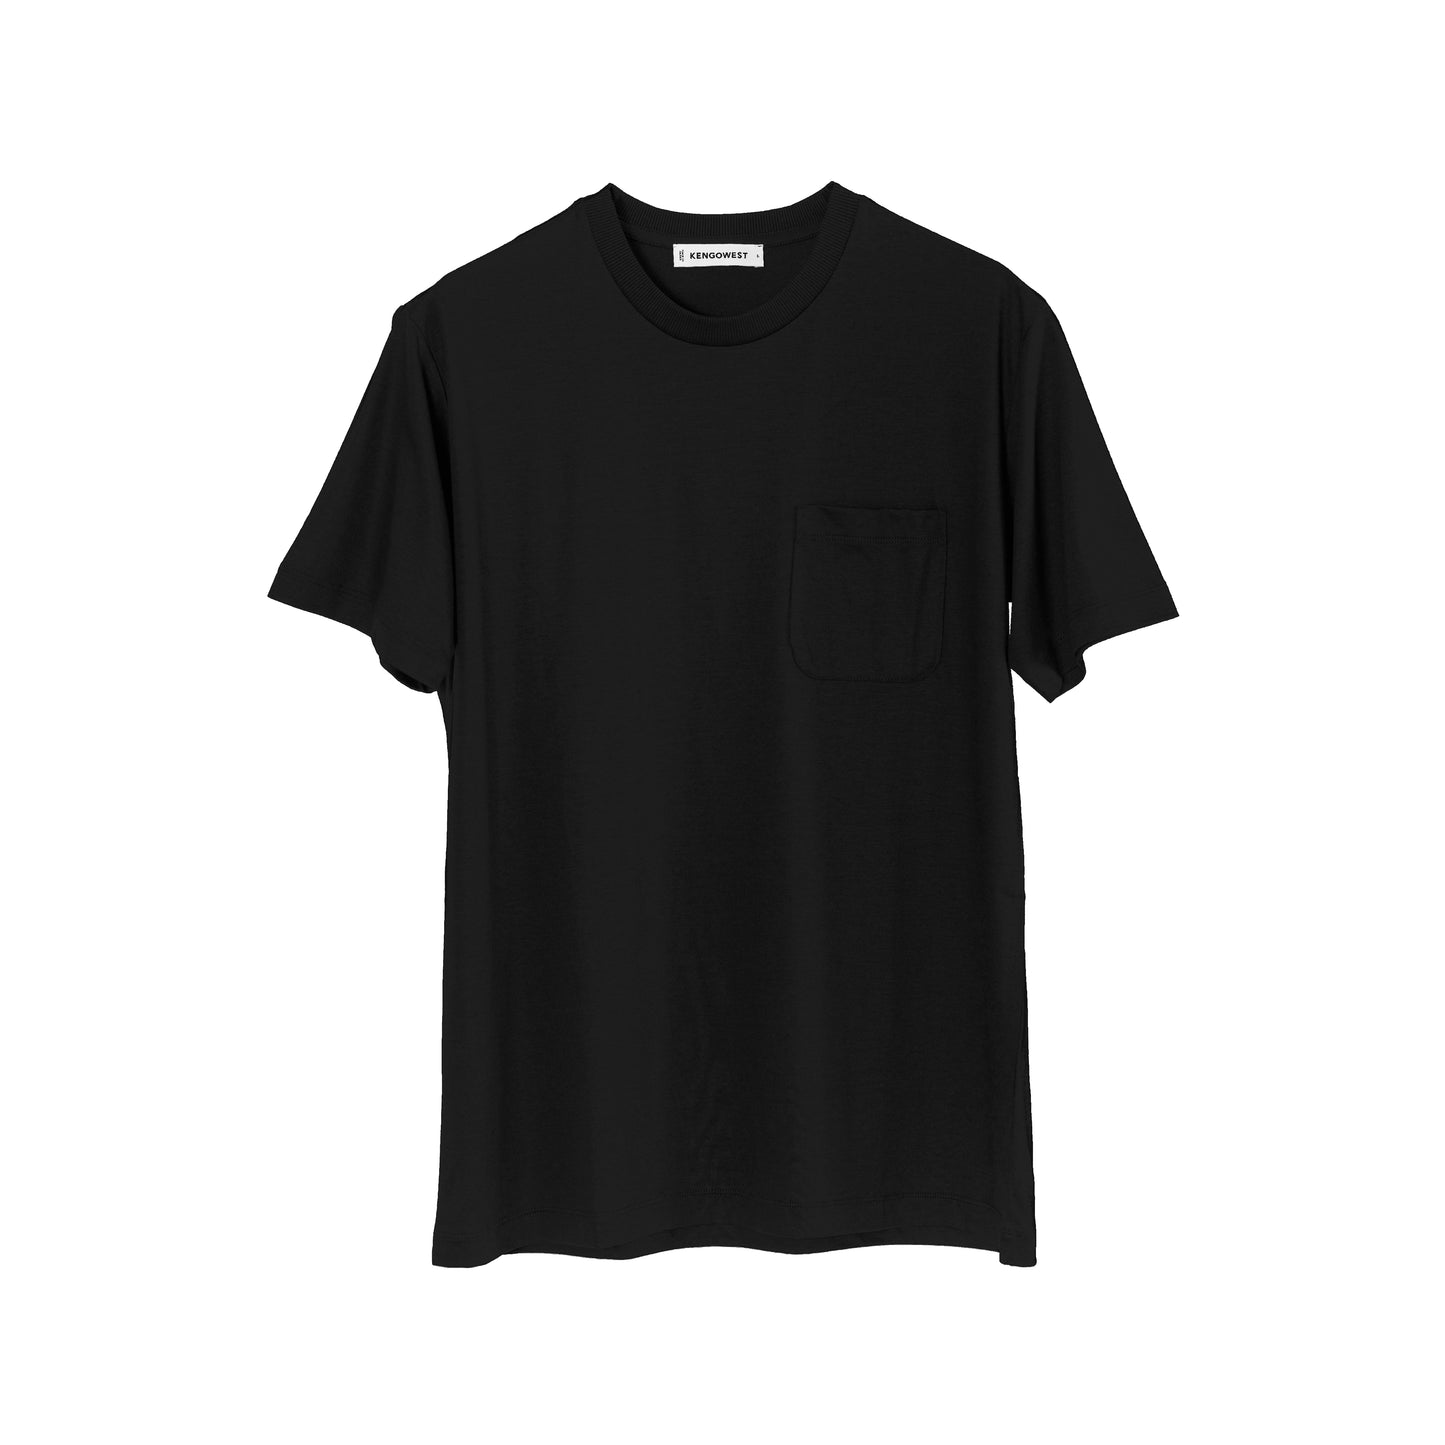 【ポケット付き】リヨセル スリムフィット クラウドTシャツ(Black)